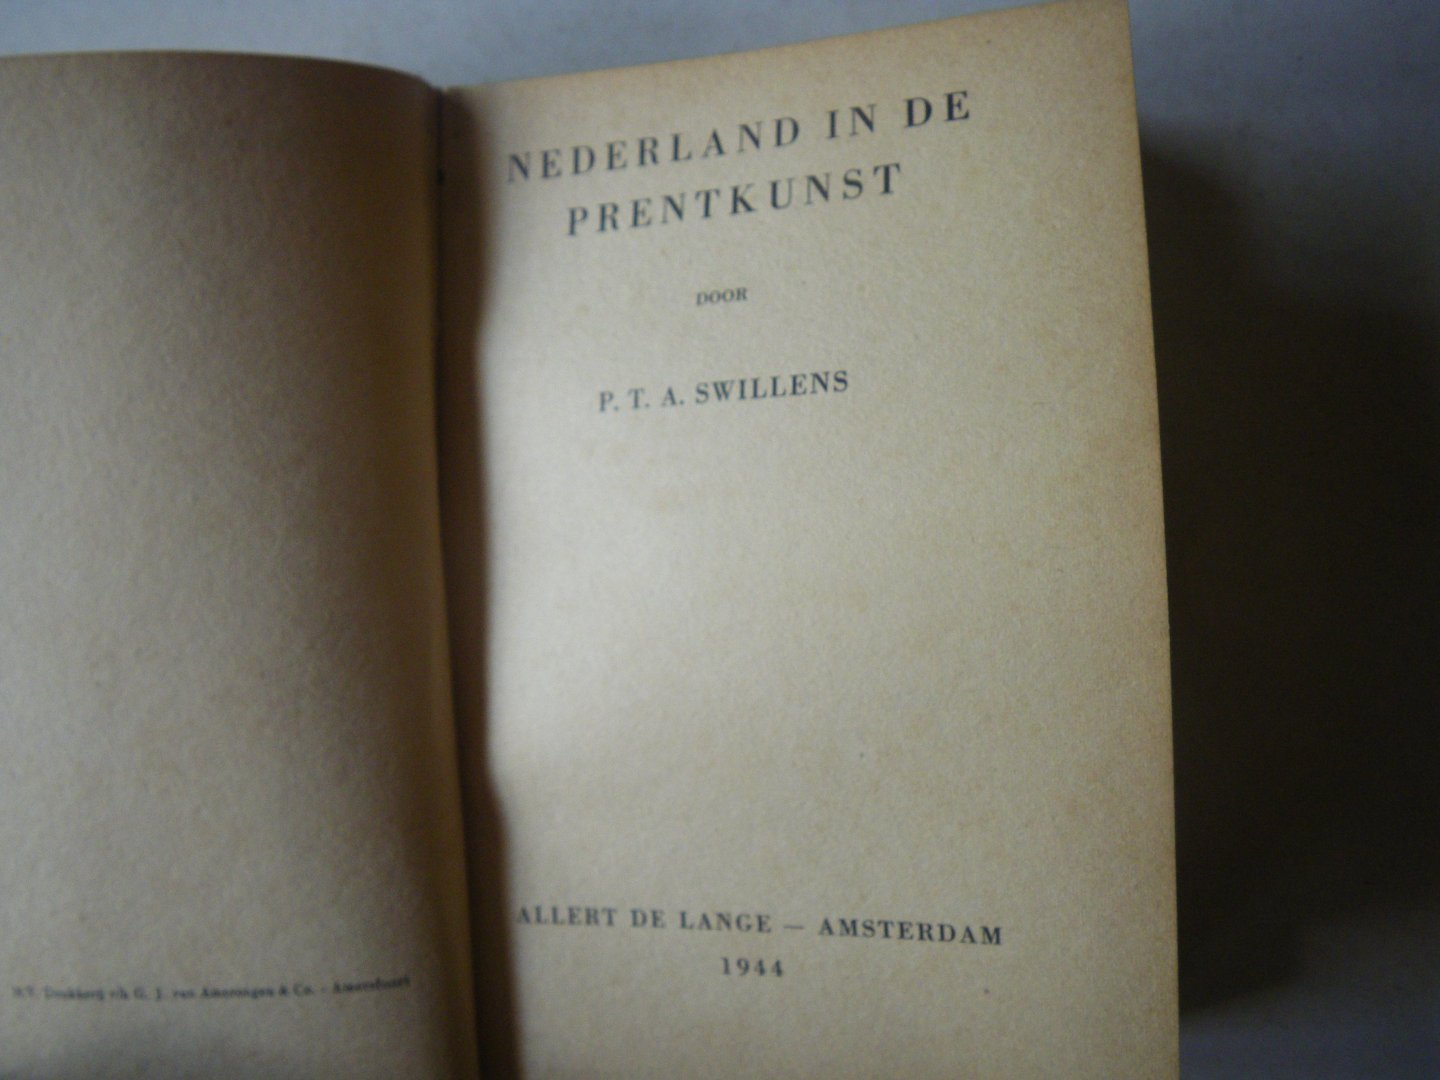 Swillens. P.T.A. - Nederland in de prentkunst